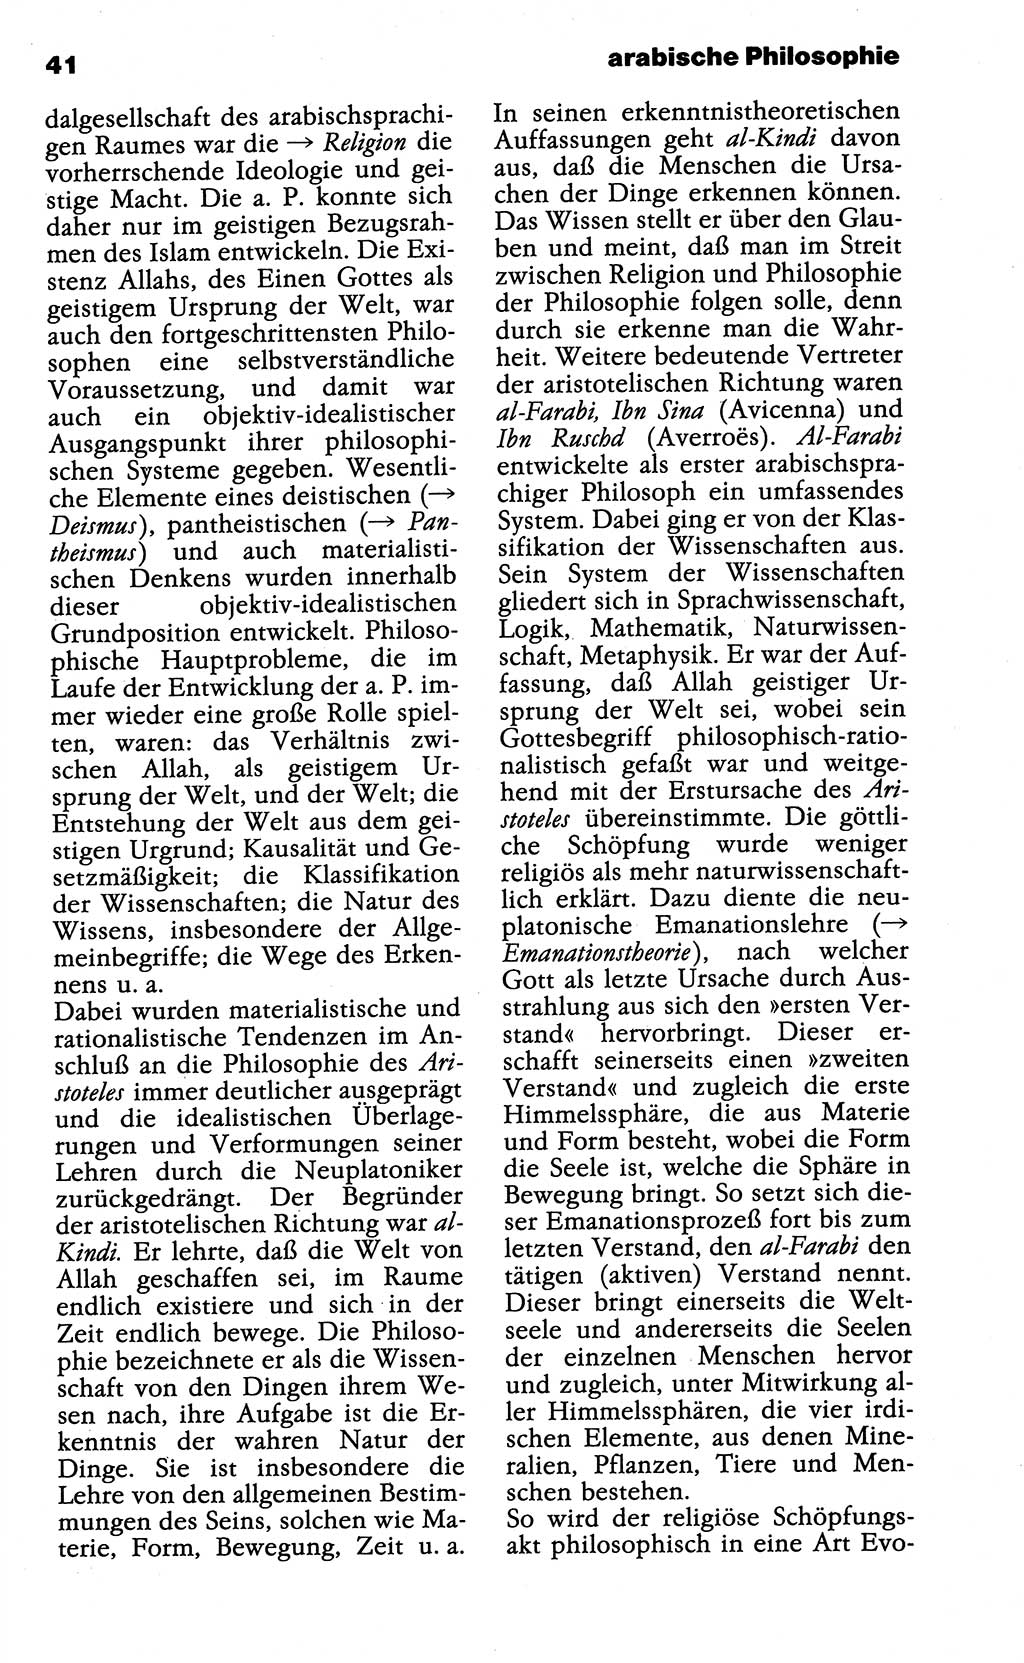 Wörterbuch der marxistisch-leninistischen Philosophie [Deutsche Demokratische Republik (DDR)] 1985, Seite 41 (Wb. ML Phil. DDR 1985, S. 41)